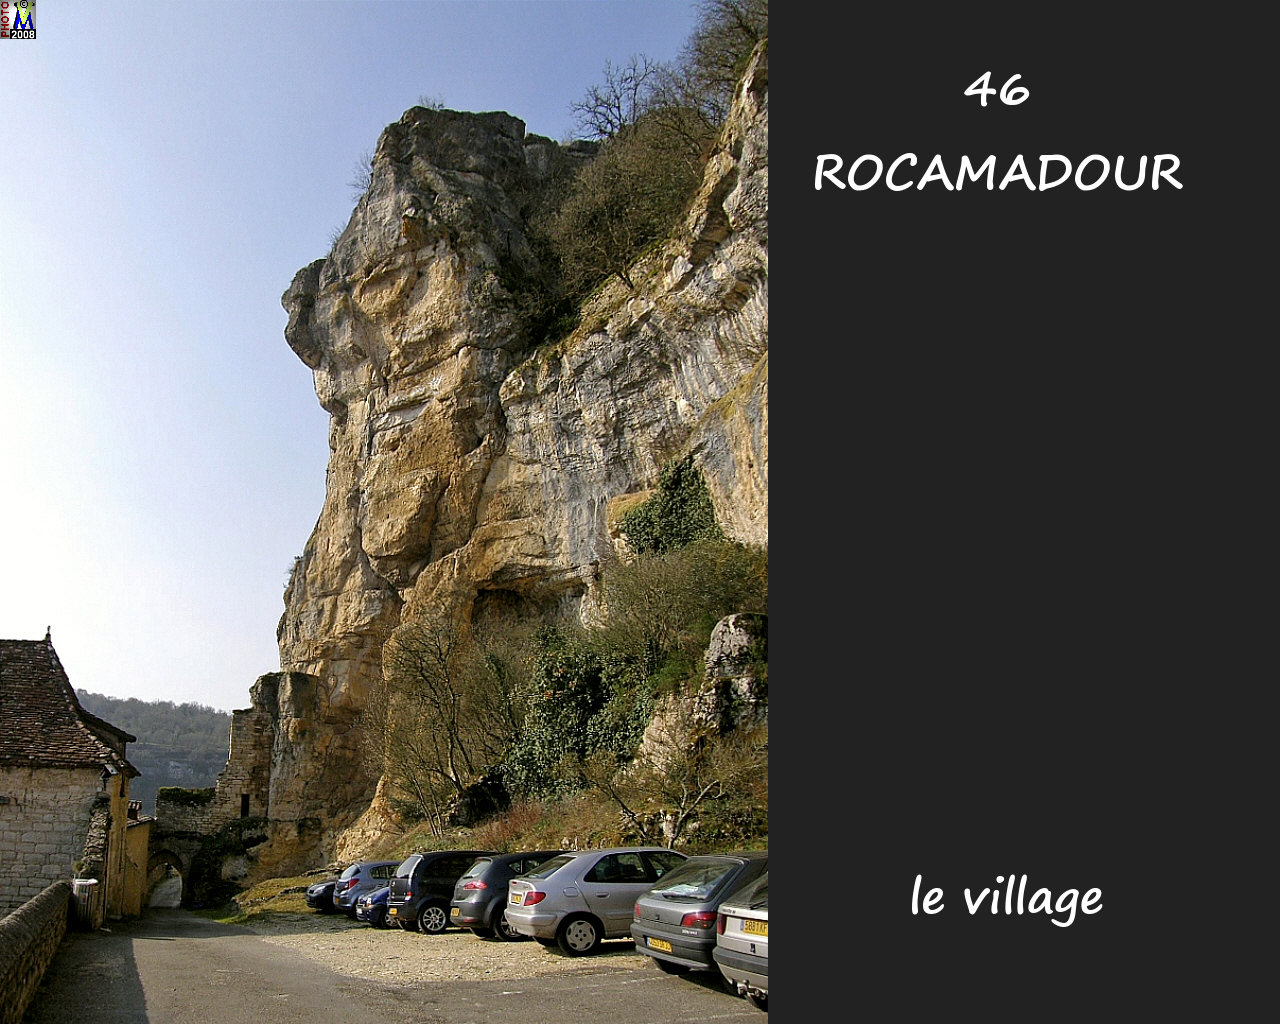 46ROCAMADOUR_village_162.jpg